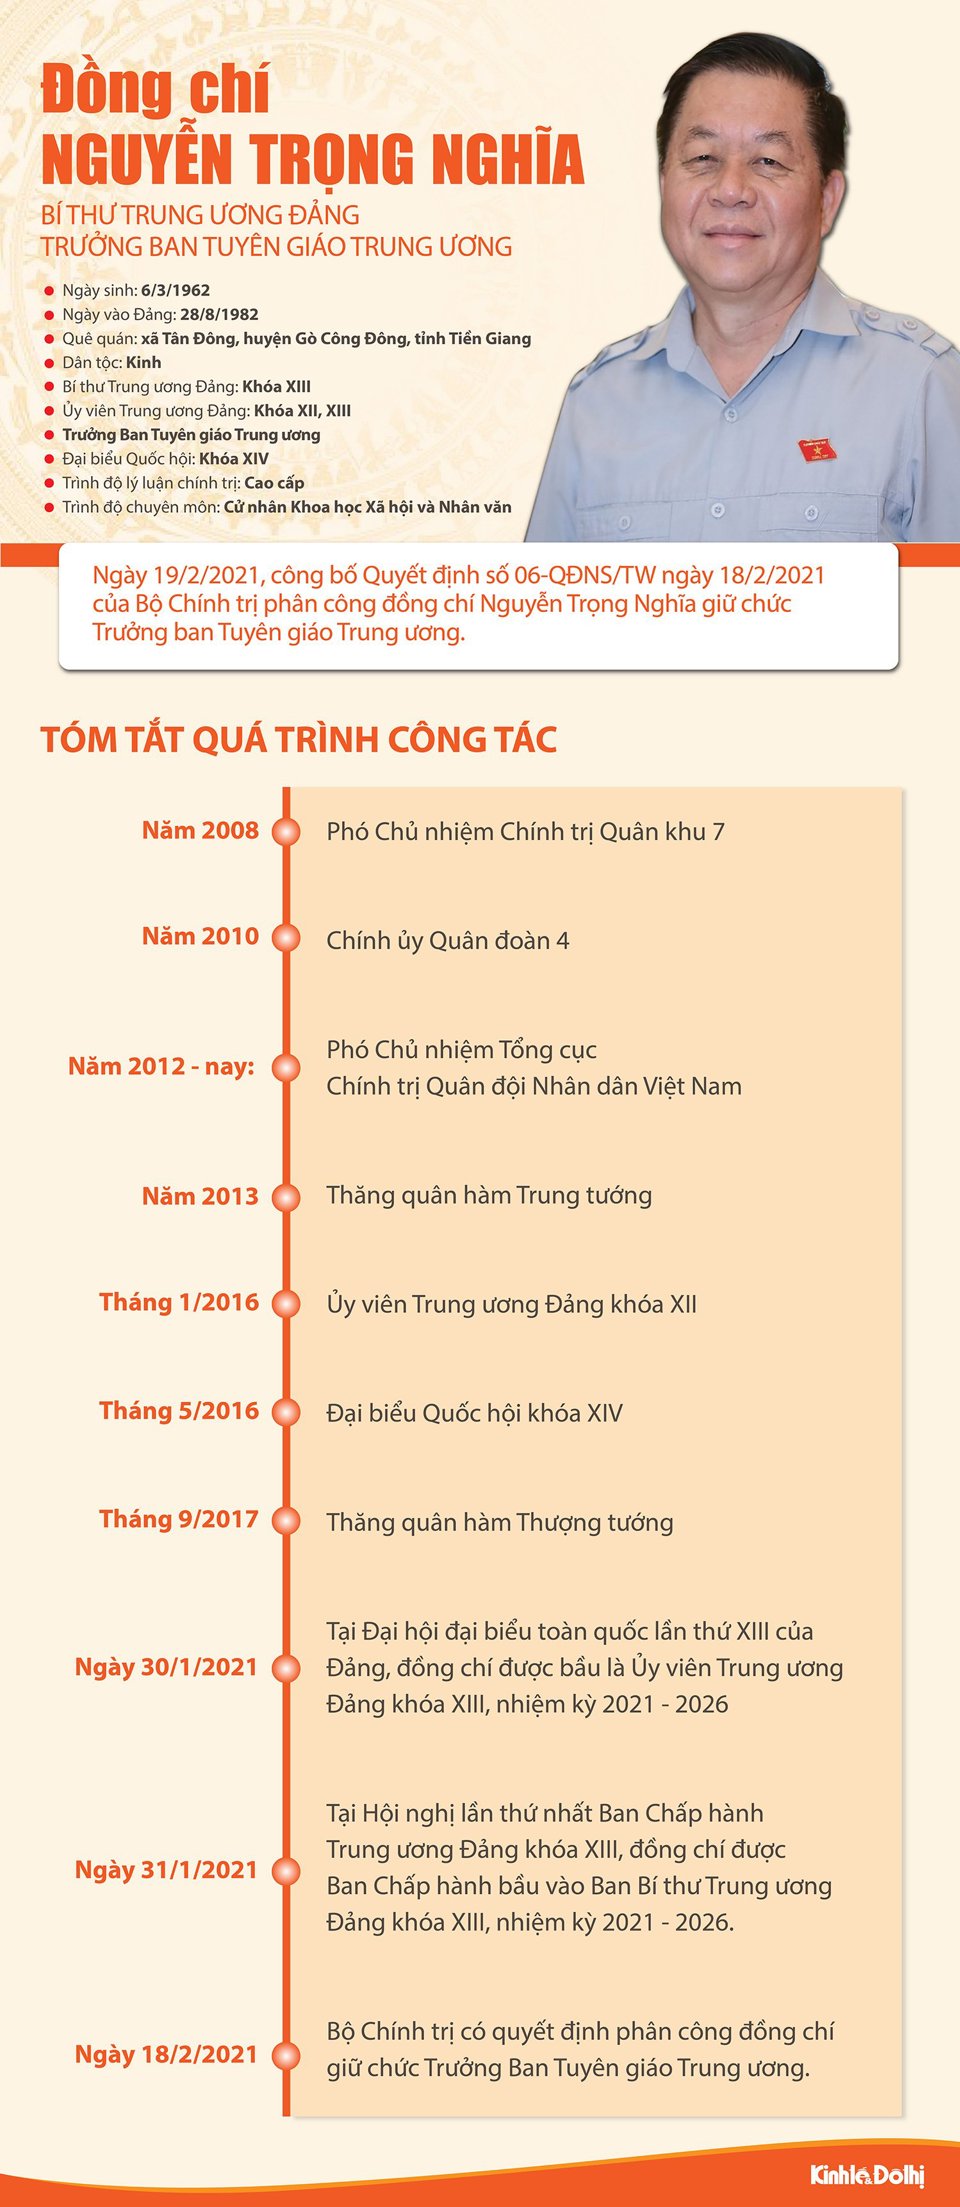 [Infographic] Tóm tắt  quá trình công tác của Trưởng ban Tuyên giáo Trung ương Nguyễn Trọng Nghĩa - Ảnh 1